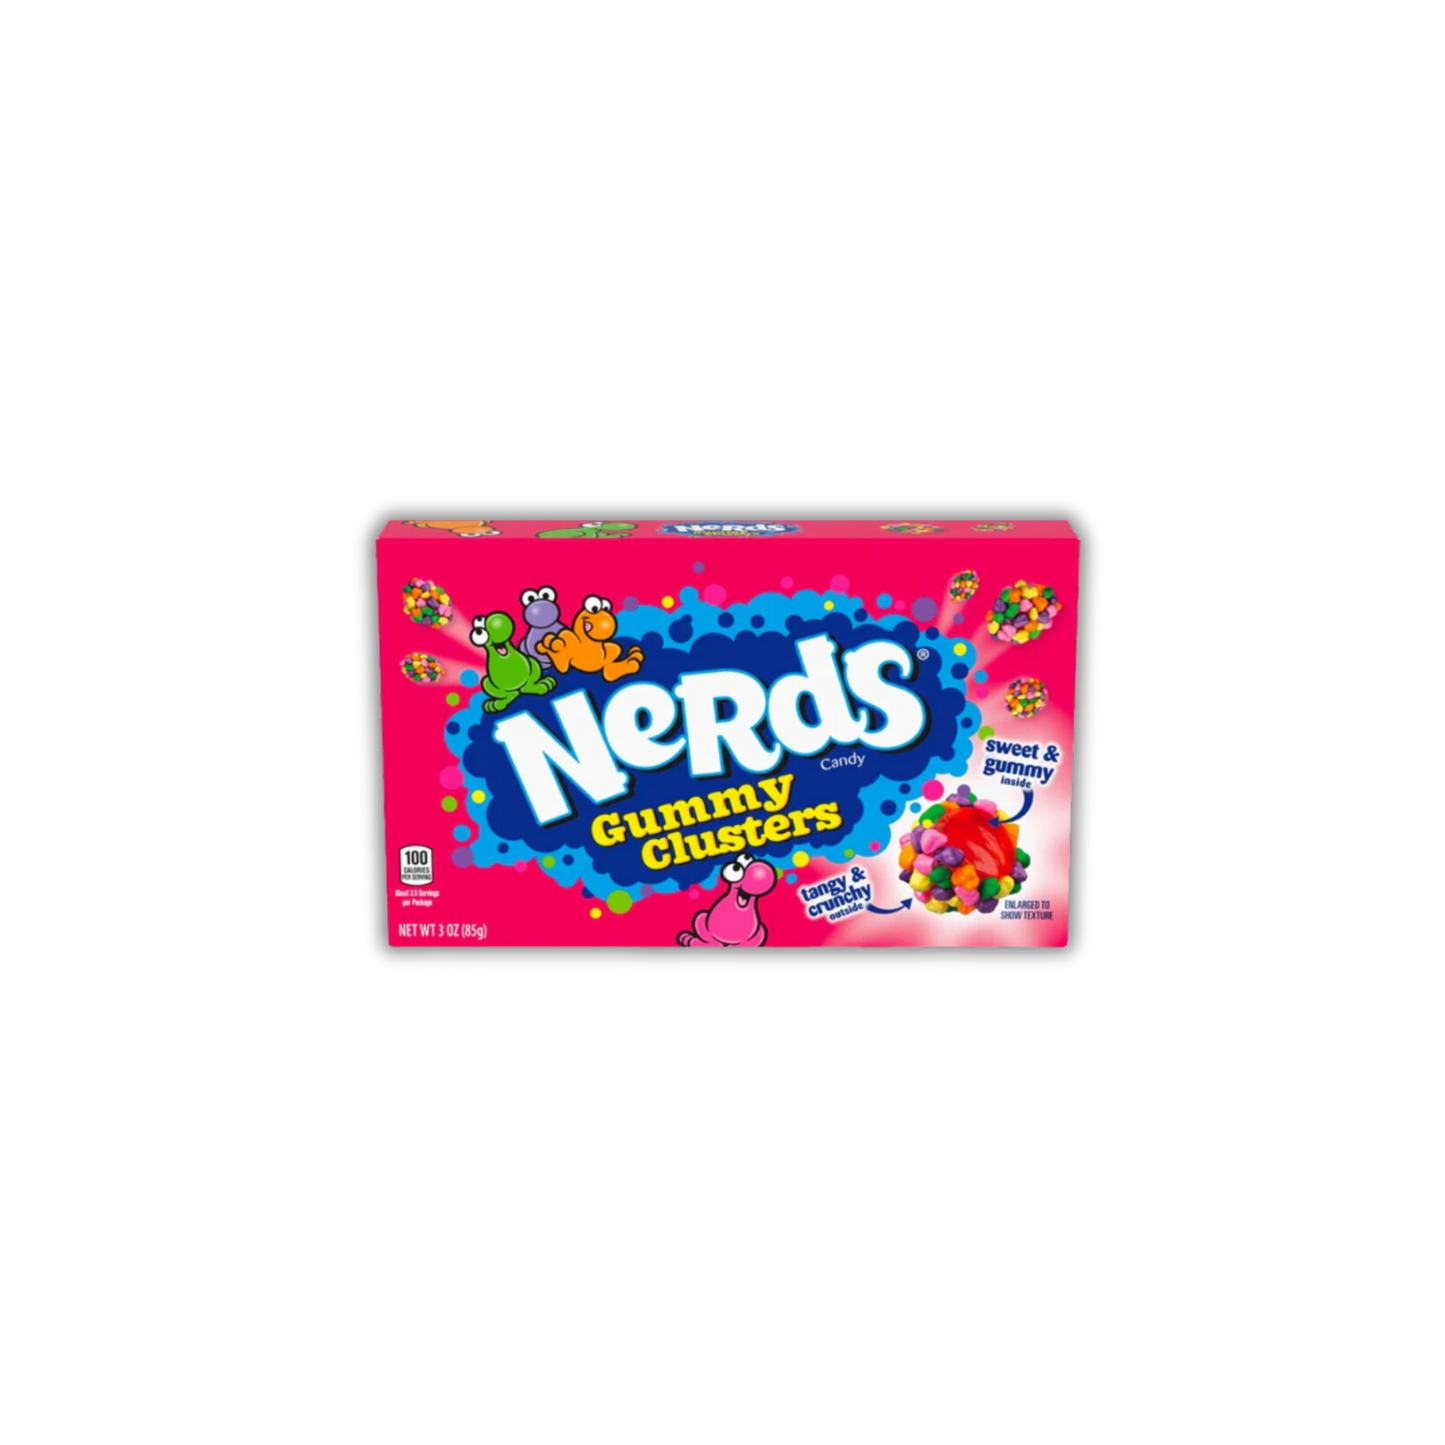 Nerds Gummy Clusters Movie Box 85g